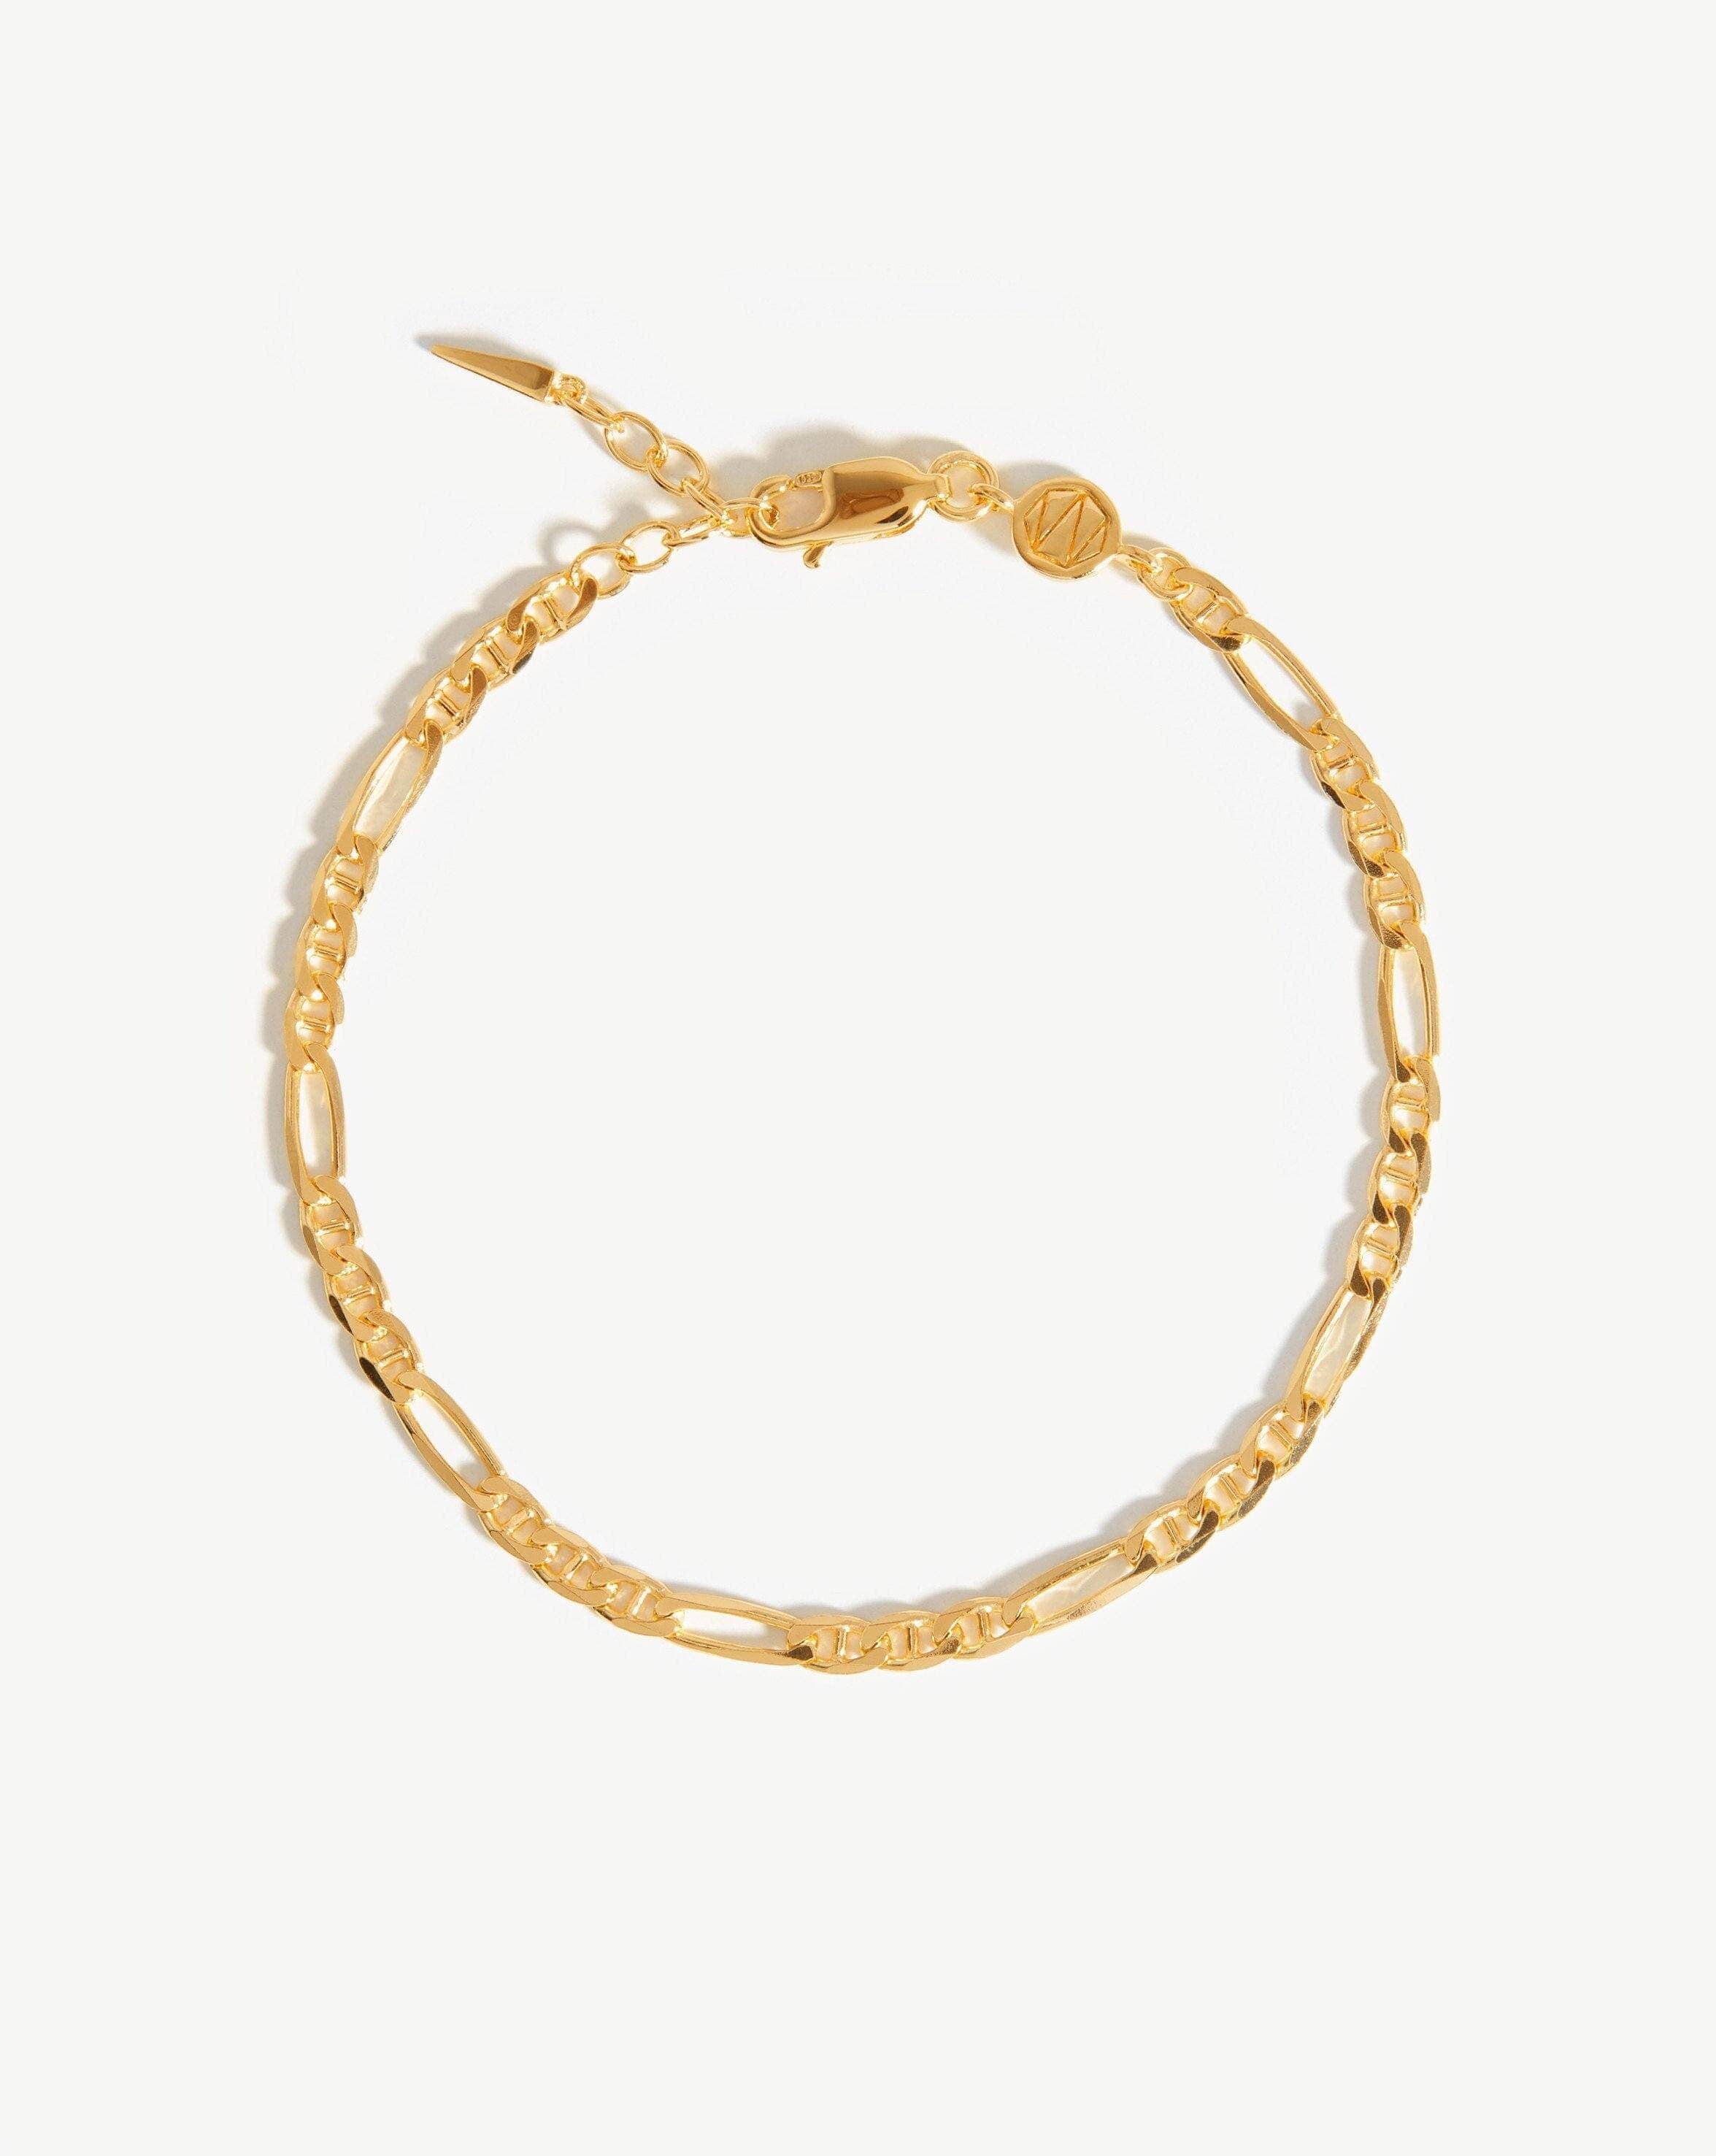 Opus Sapphire Type Chain Bracelet, Gold Vermeil w/Black Enamel